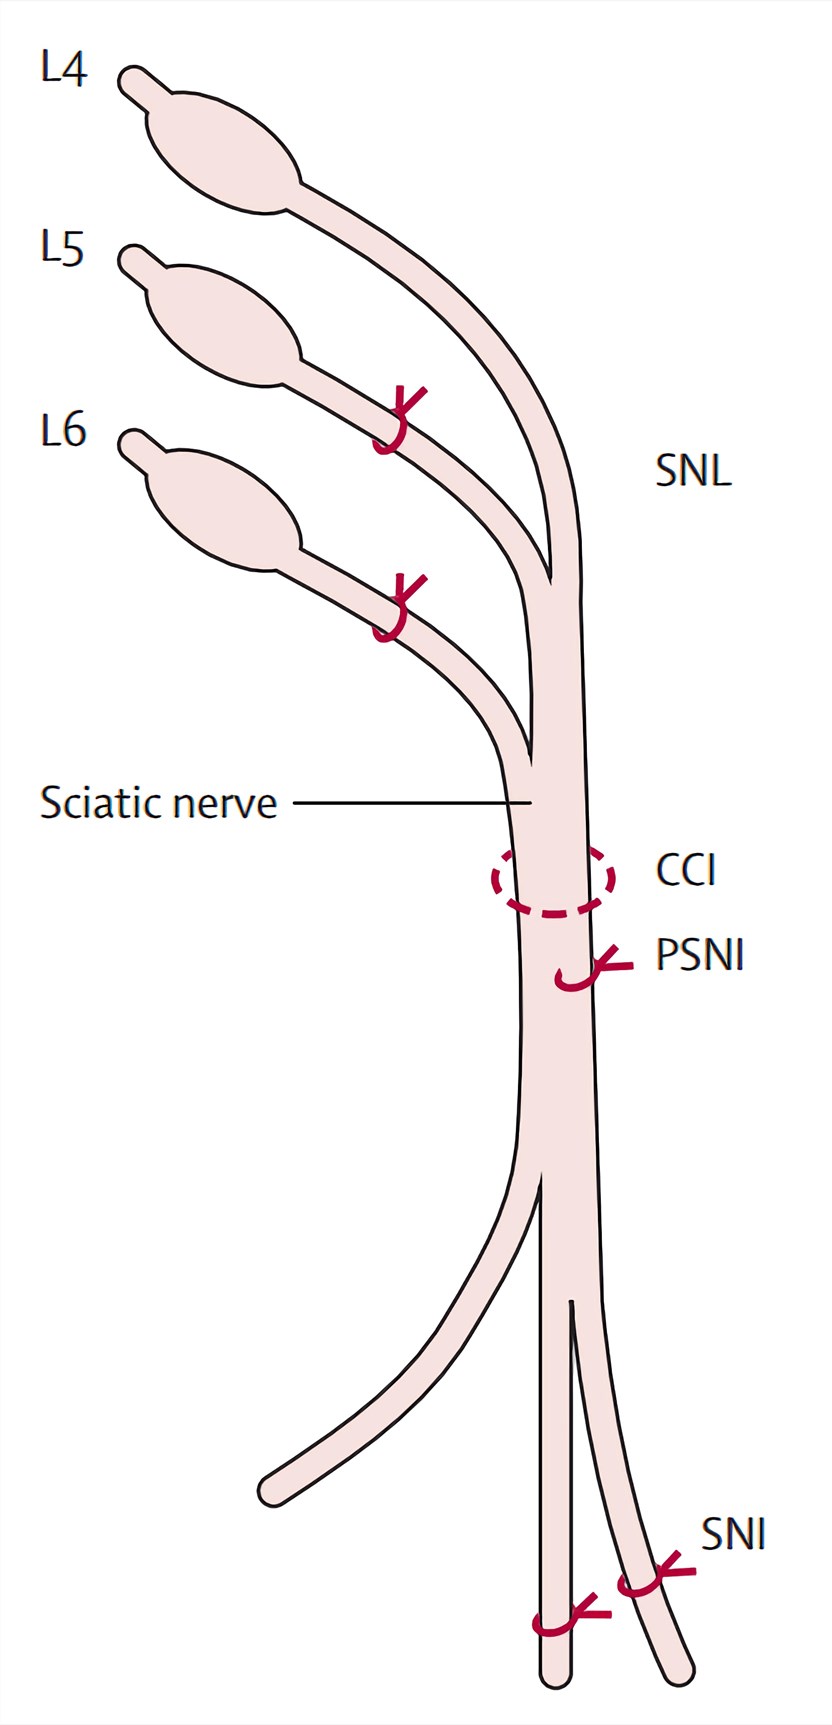 Spinal Nerve Ligation (SNL) Rat Model